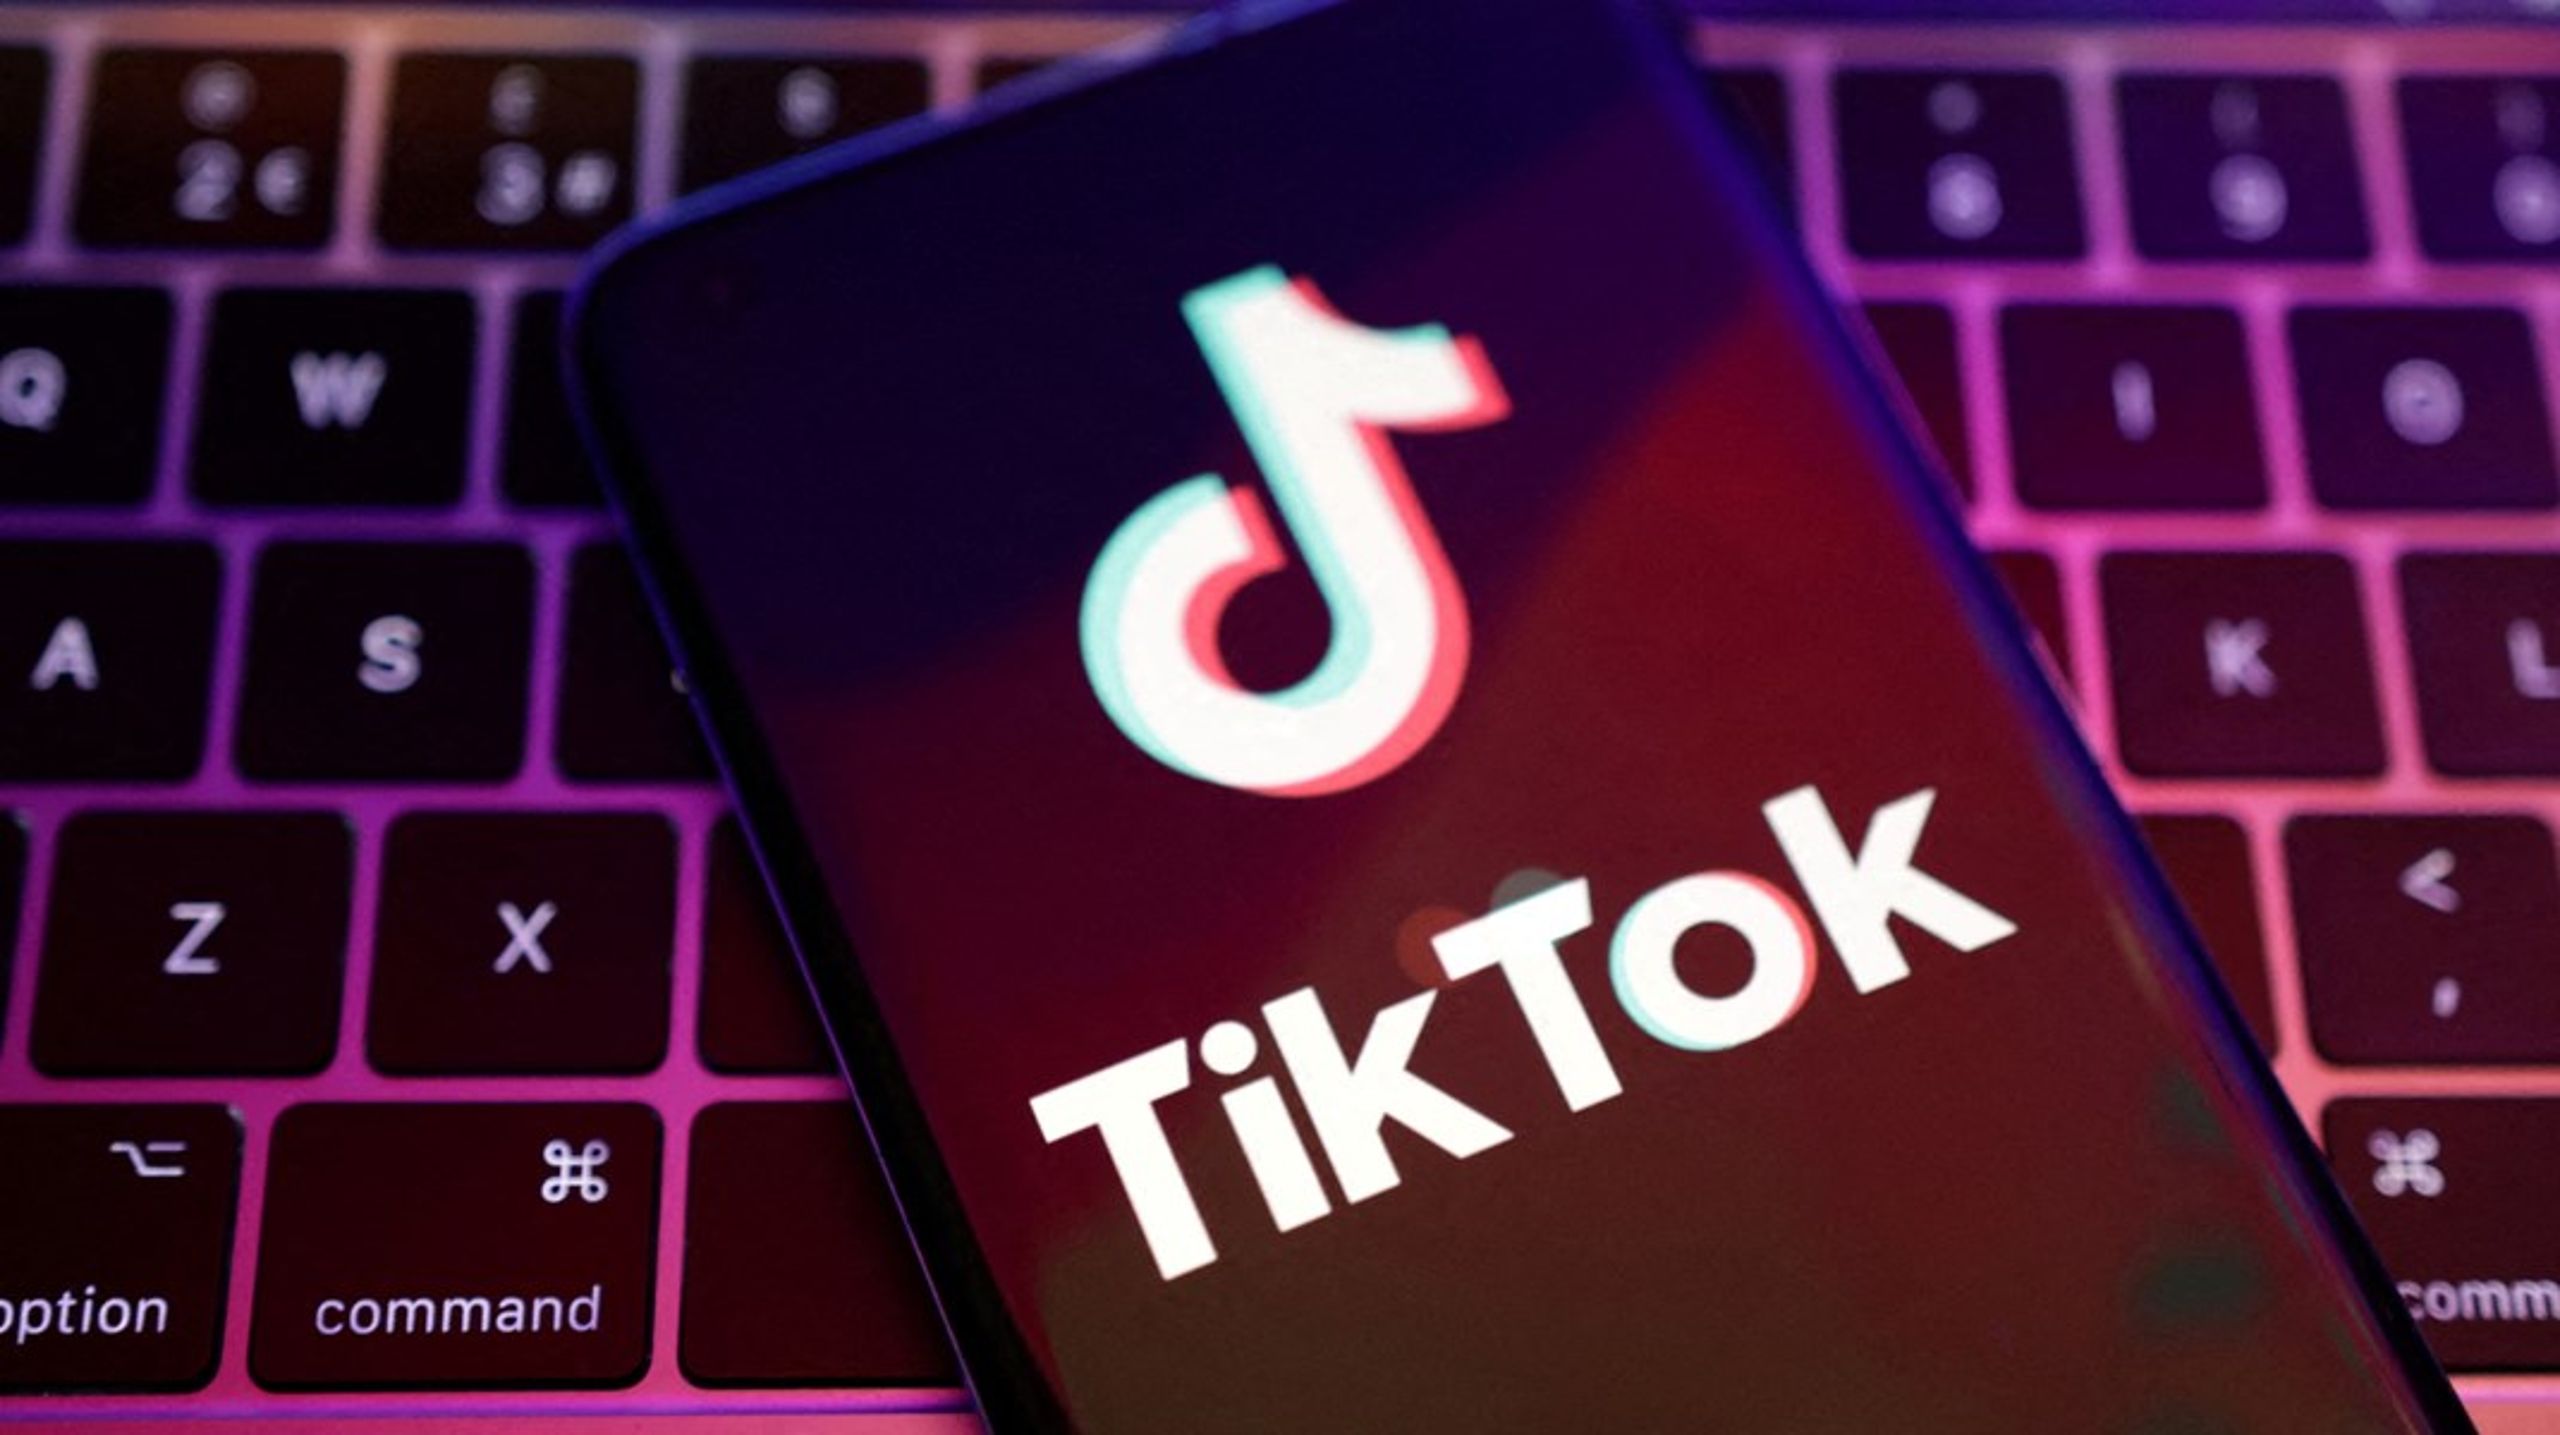 Center for Cybersikkerhed har vurderet, at TikTok beder brugere om at afgive meget vide rettigheder&nbsp;sammenlignet med andre sociale medier, blandt andet lokalitetsoplysninger og anvendelse af telefoners mikrofon og kamera, skriver&nbsp;Julie Frølich og Nick Jacobsen.